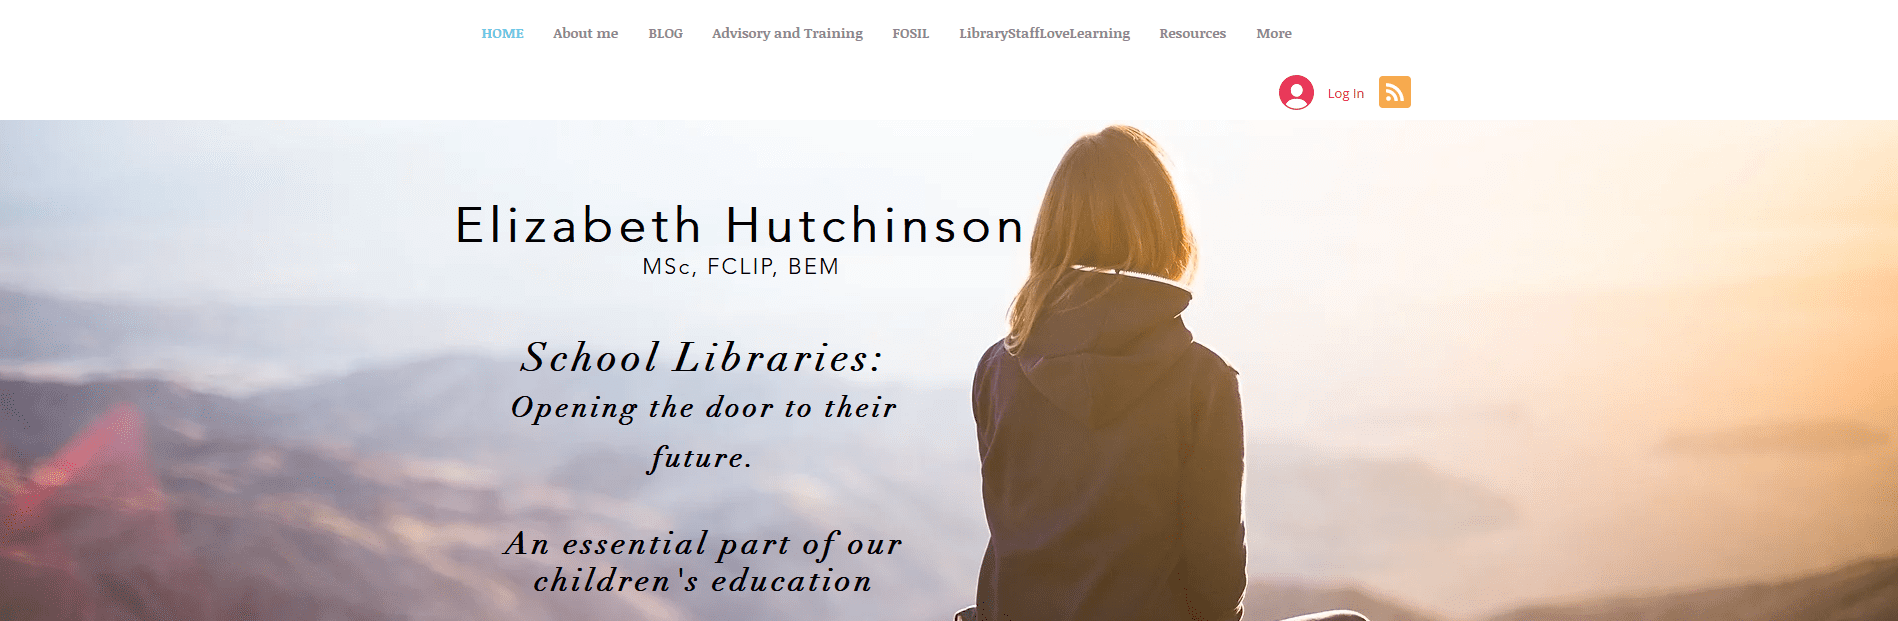 Blog | Elizabeth Hutchinson Newsroom